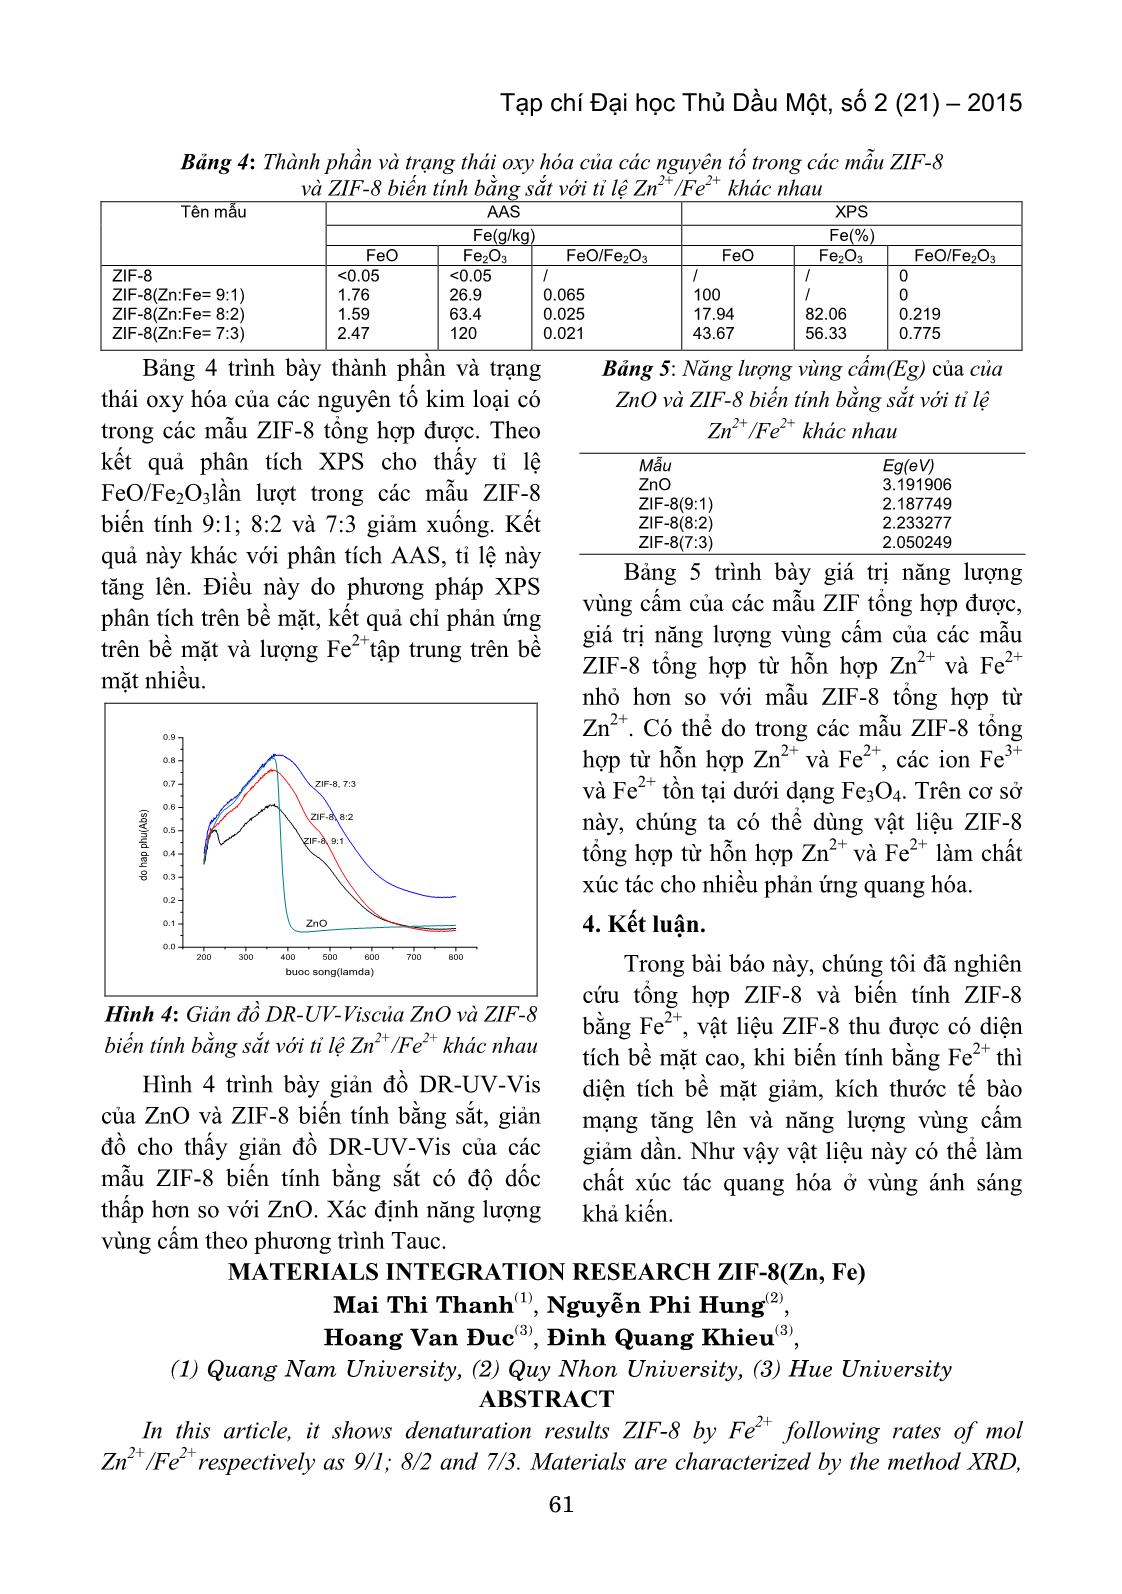 Nghiên cứu tổng hợp vật liệu ZIF-8 (Zn, Fe) trang 5